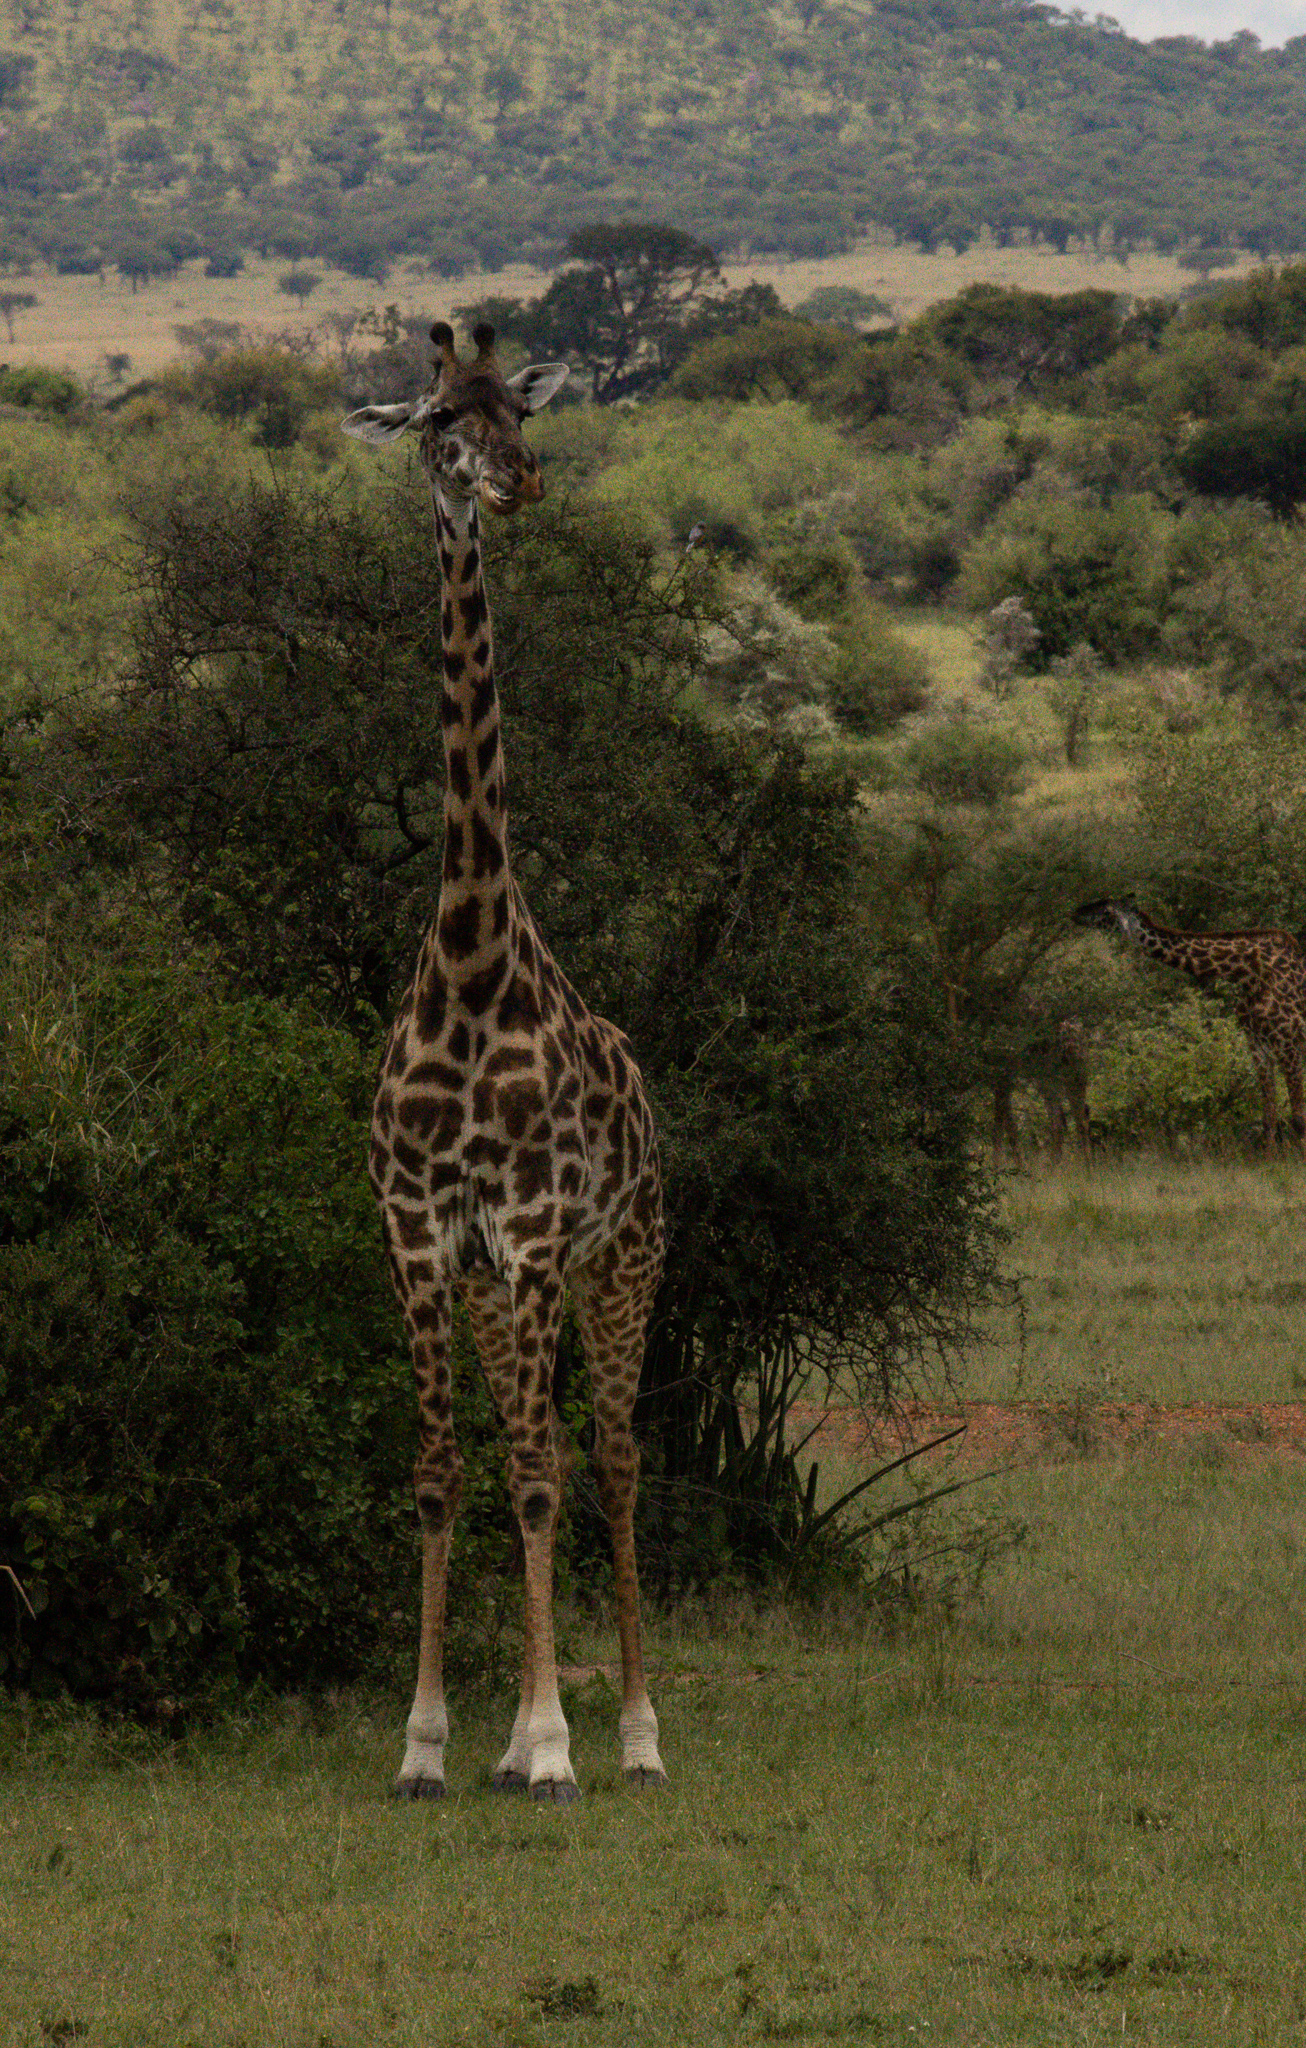 A giraffe seen on a Tanzania safari